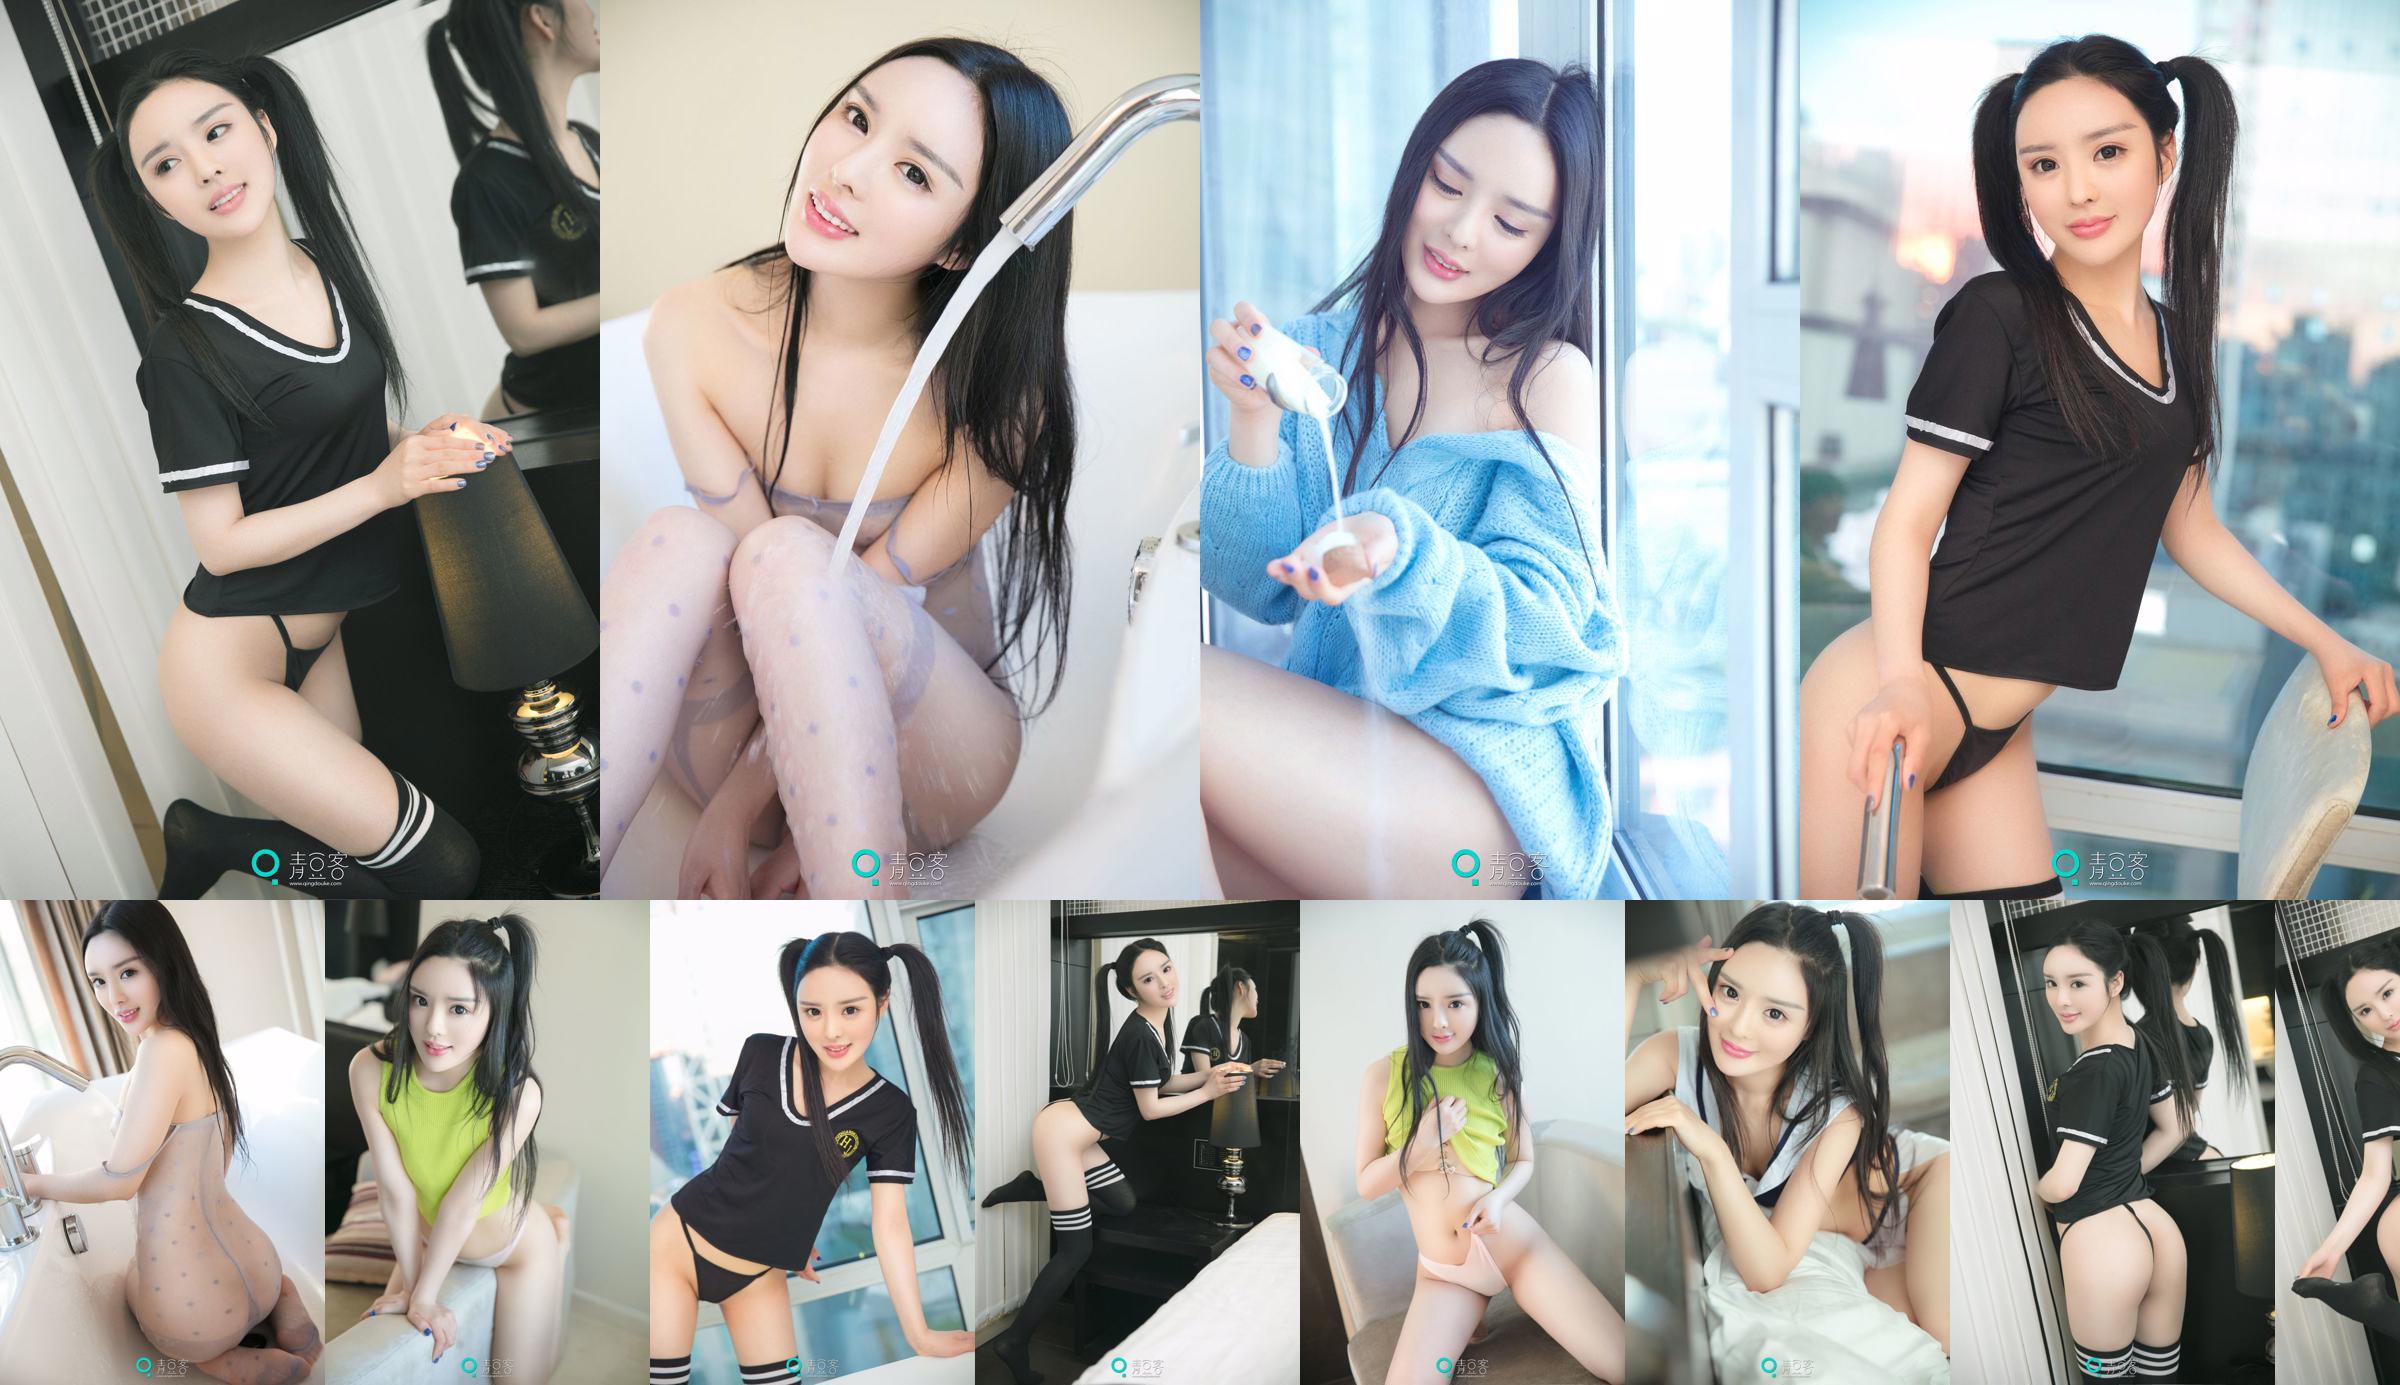 Xiao Di "Sexy Sweater + Uniform" [Qing Dou Ke] No.8cb41c Page 1